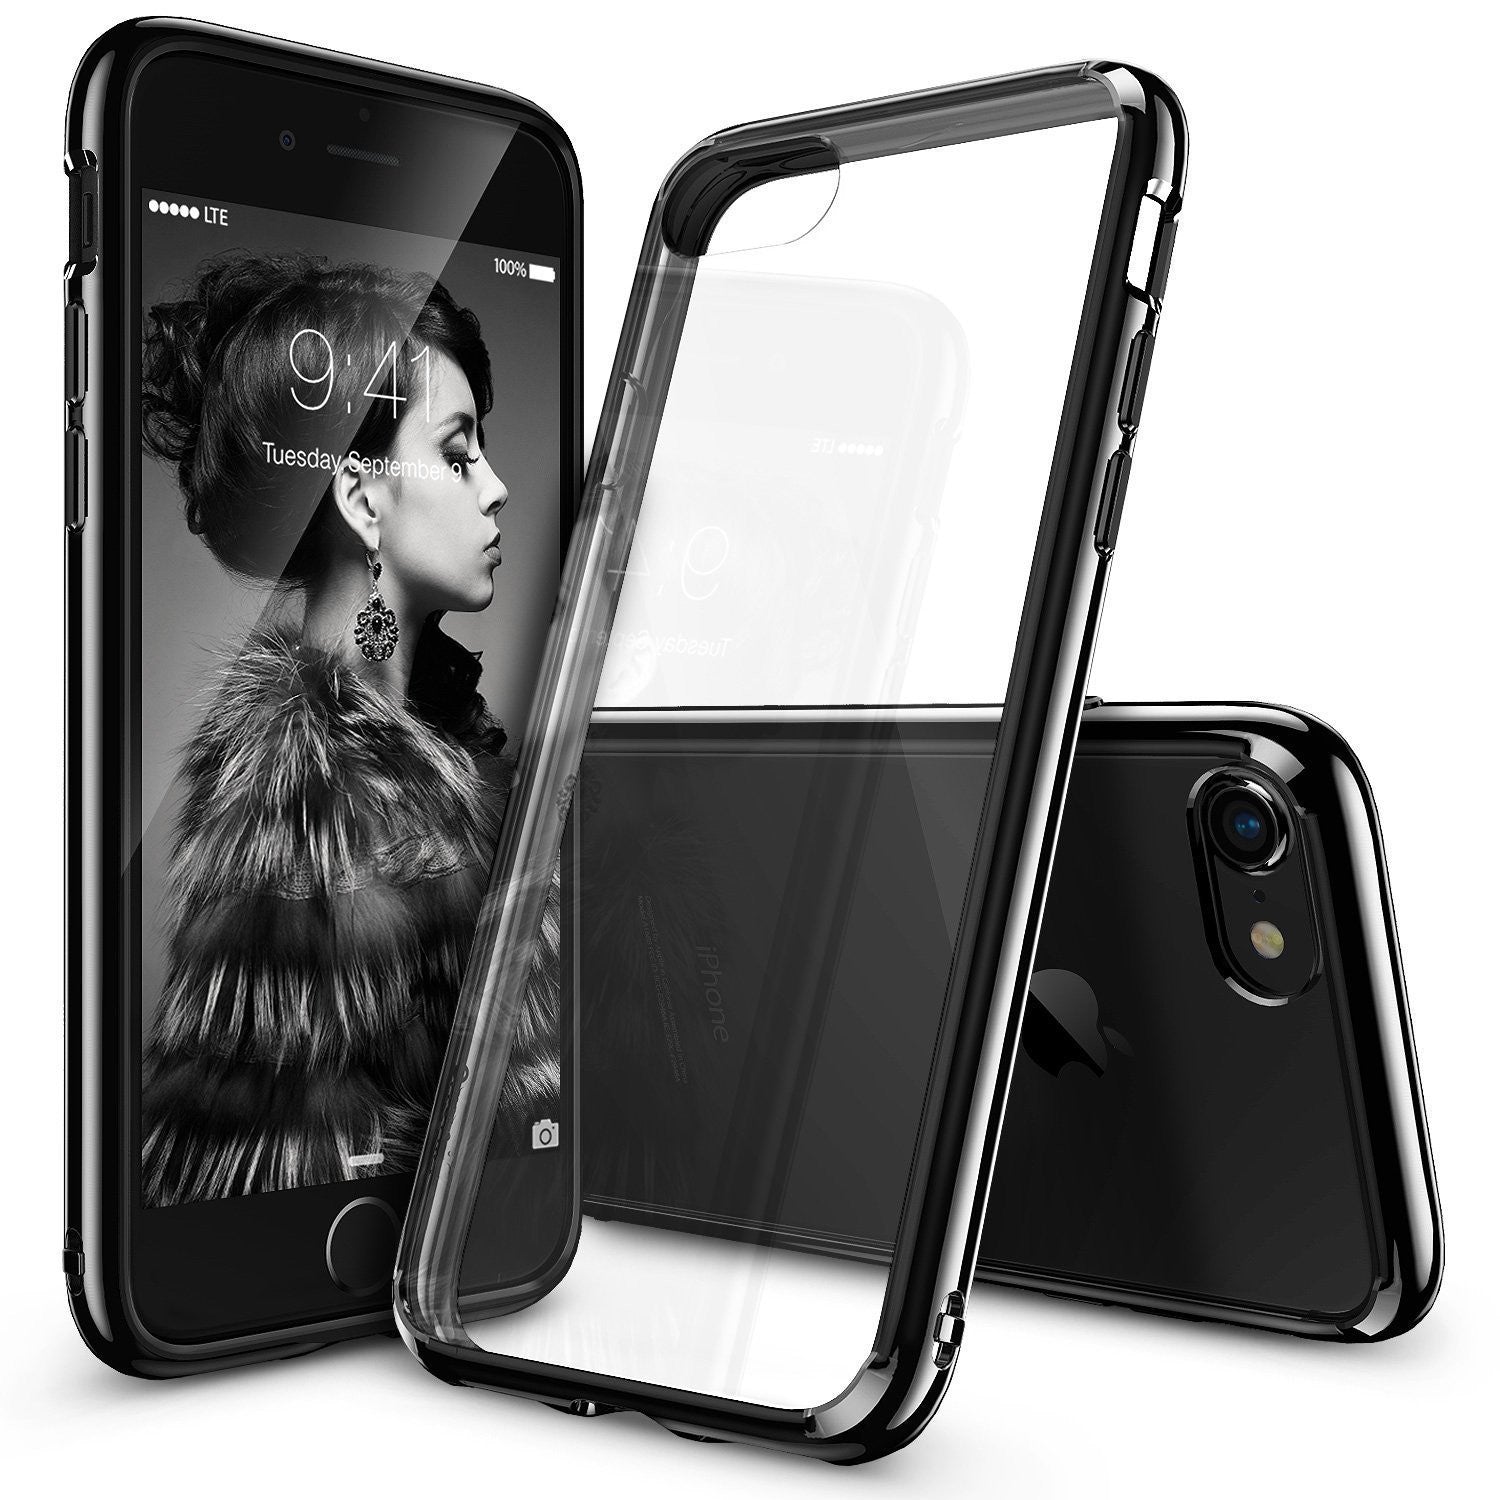 Θηκη Ringke Fusion - iPhone 7 /8 / SE 2020 - Black - iThinksmart.gr